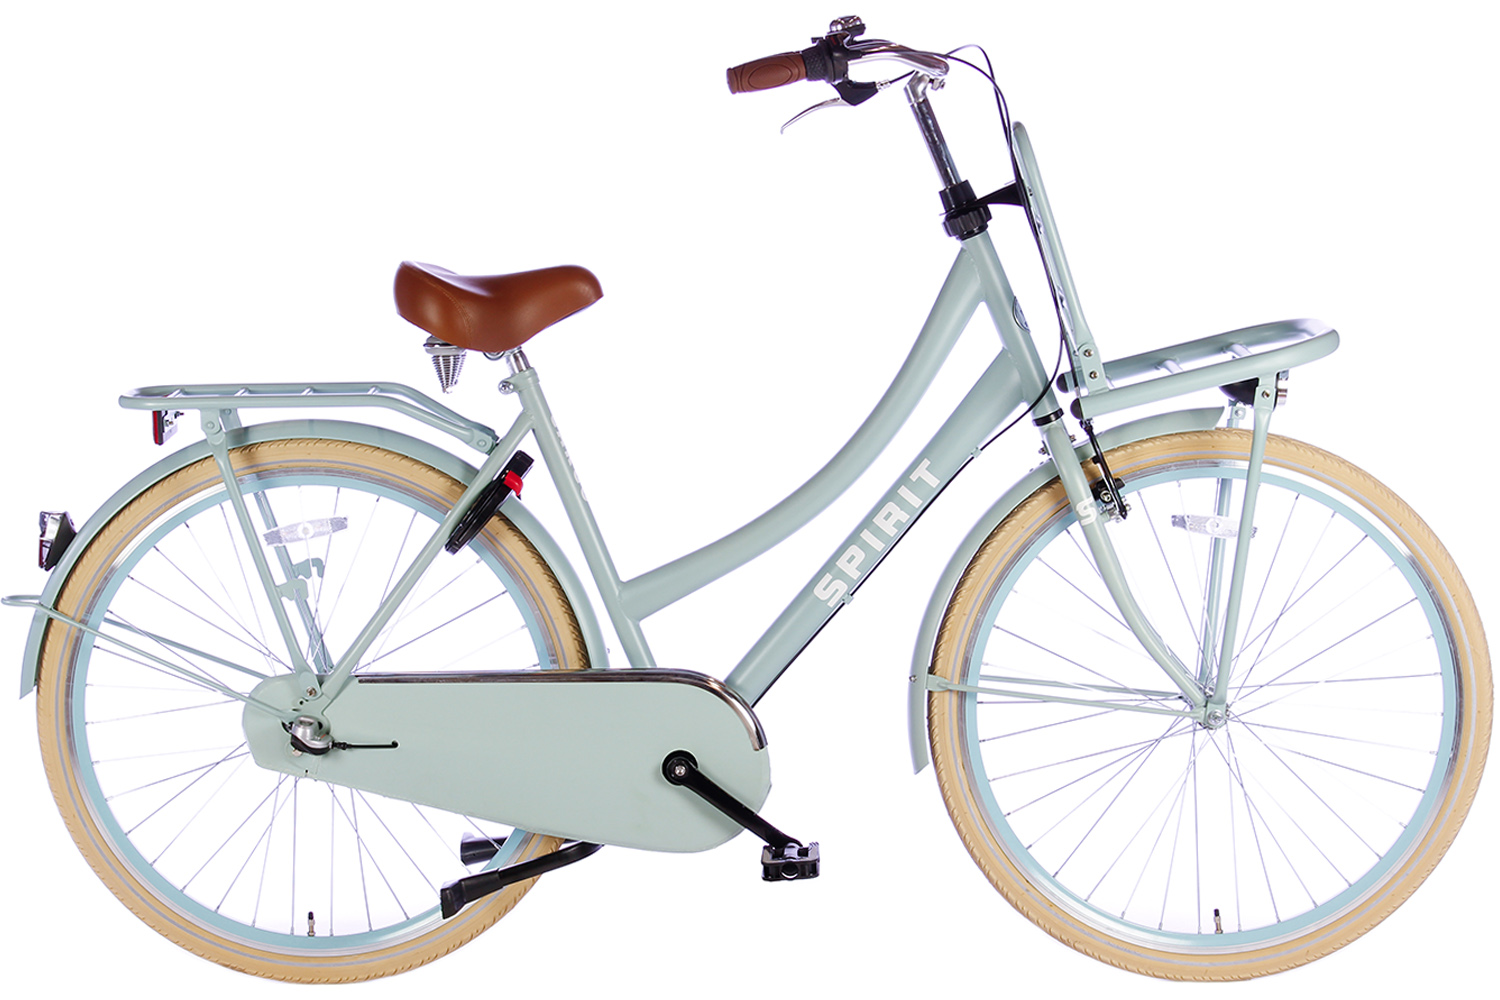 bijl verklaren Pech Spirit Cargo Plus N3 Groen 28 inch Transportfiets dames | 379,- |  City-Bikes.nl